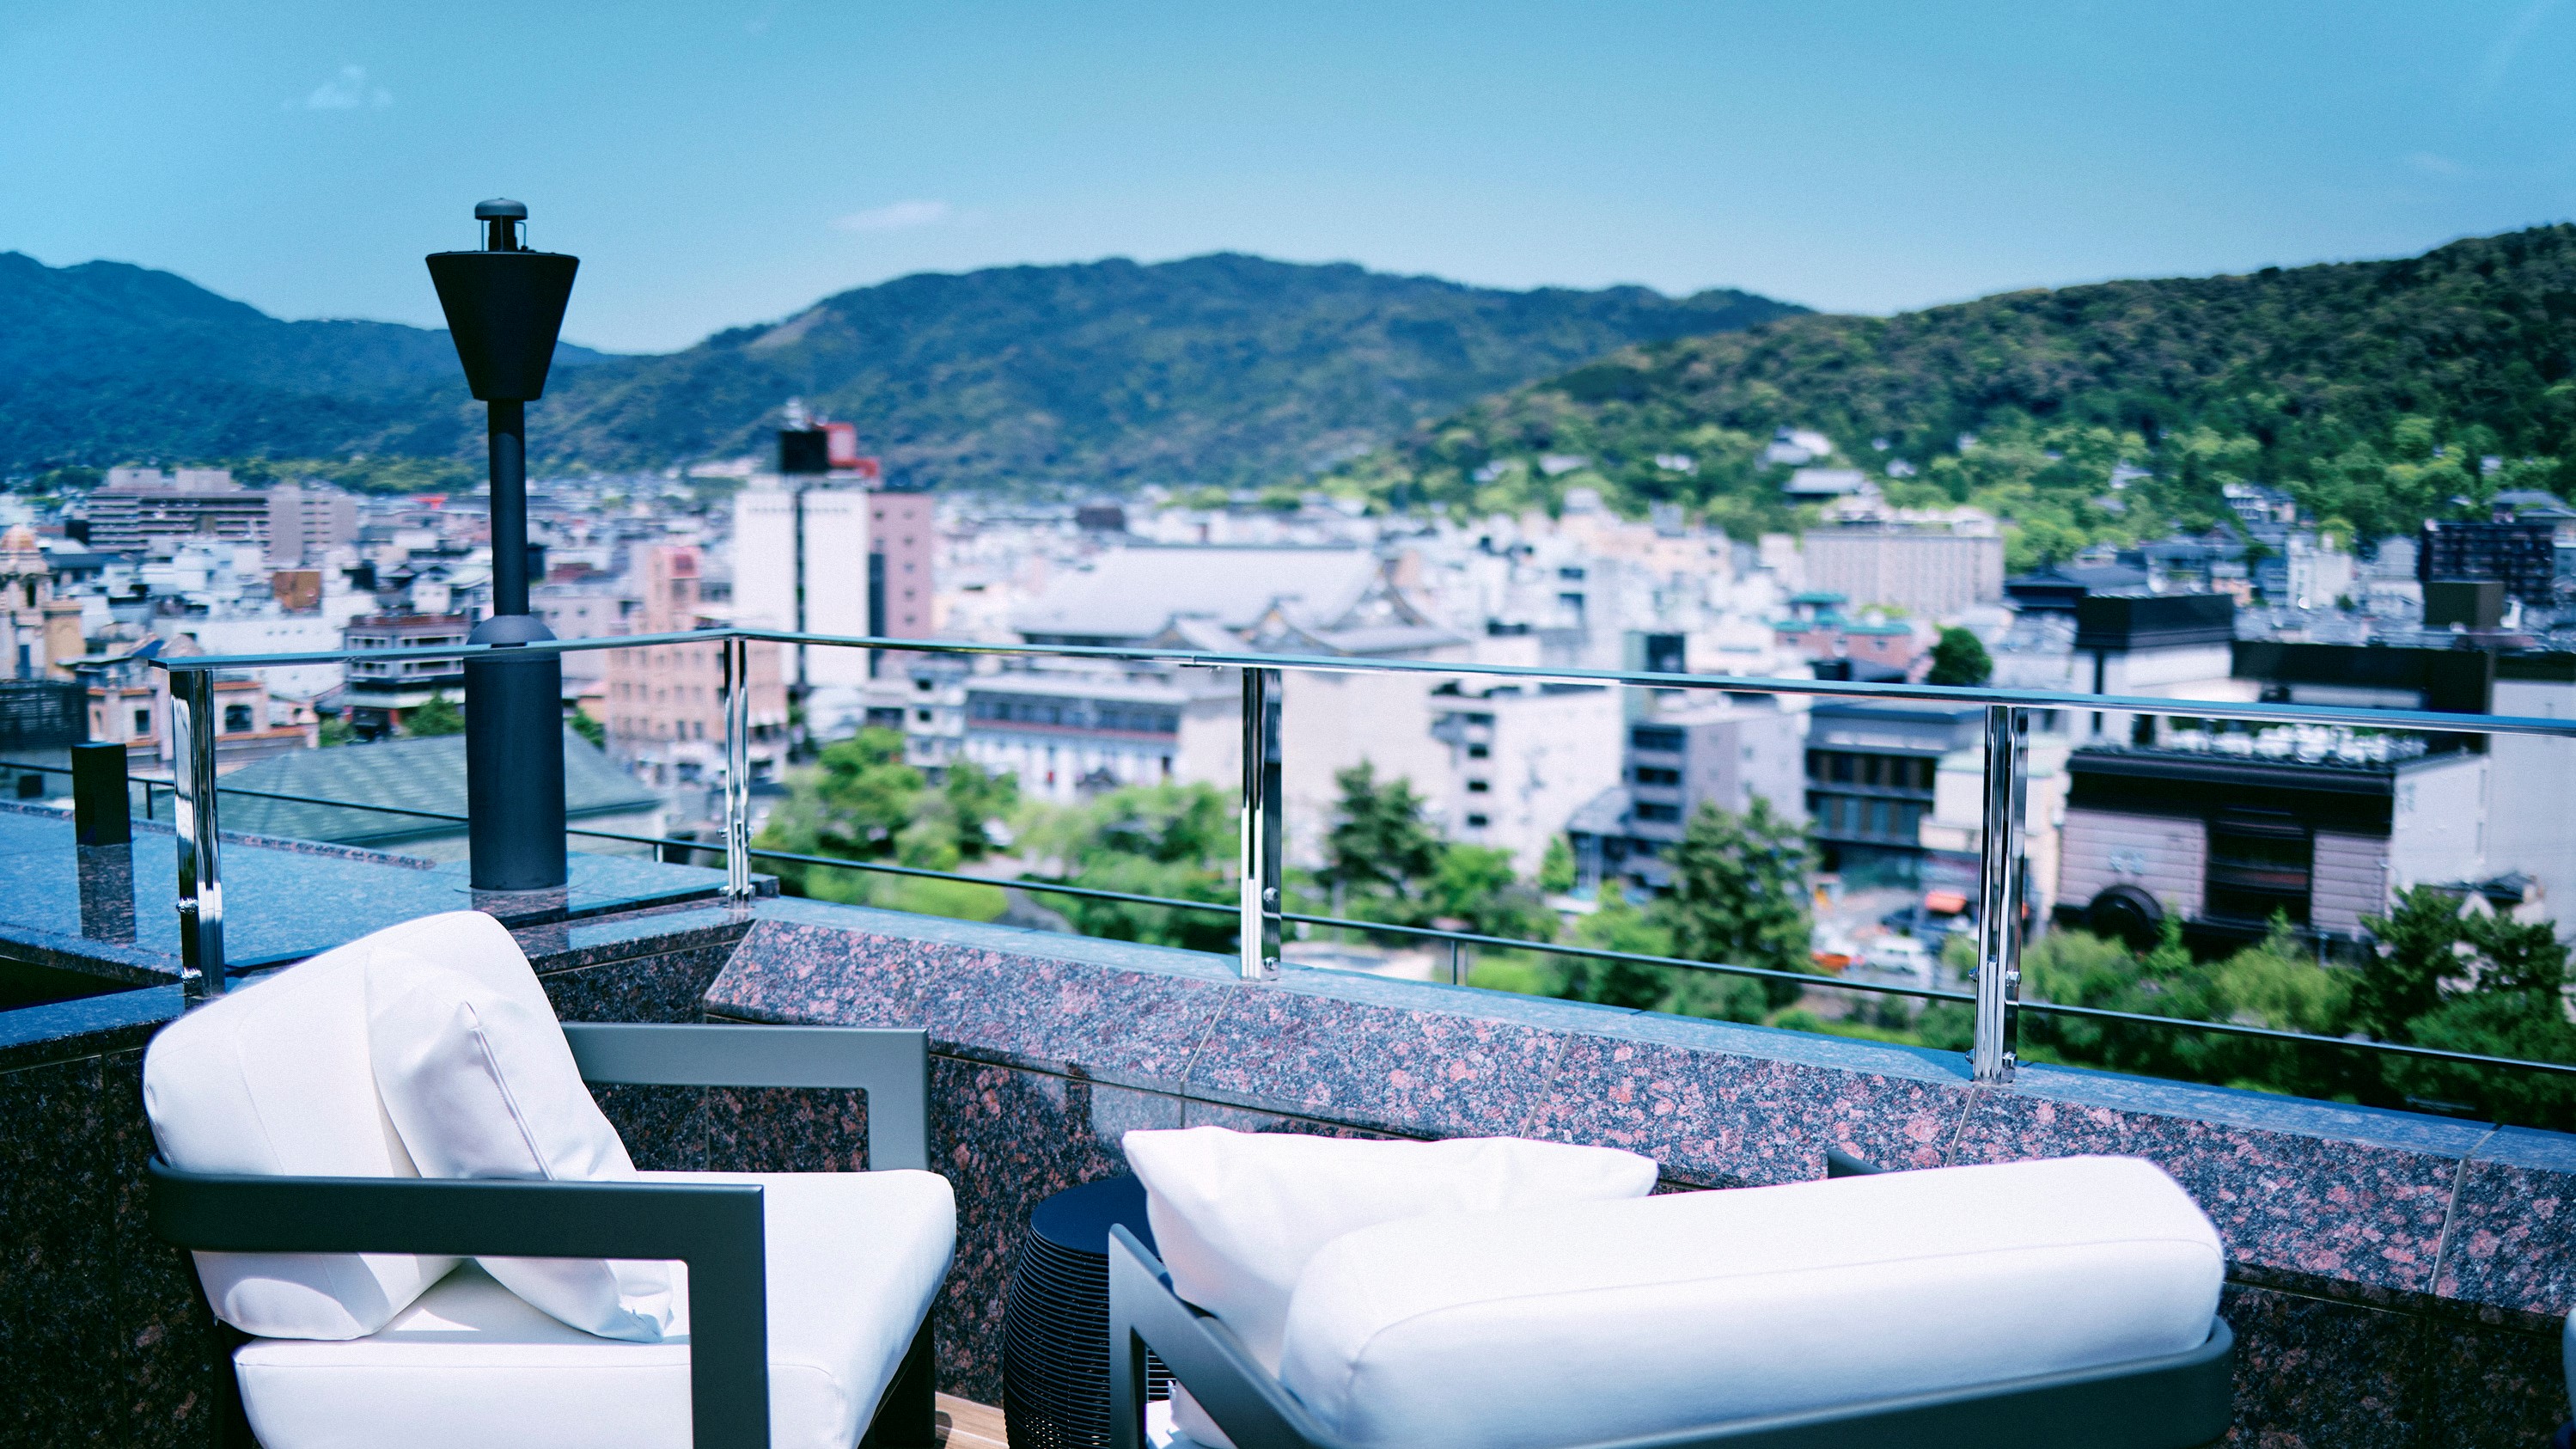 ルーフトップラウンジ「空庭テラス」眼下に広がる京の街並み、大パノラマをご体感ください